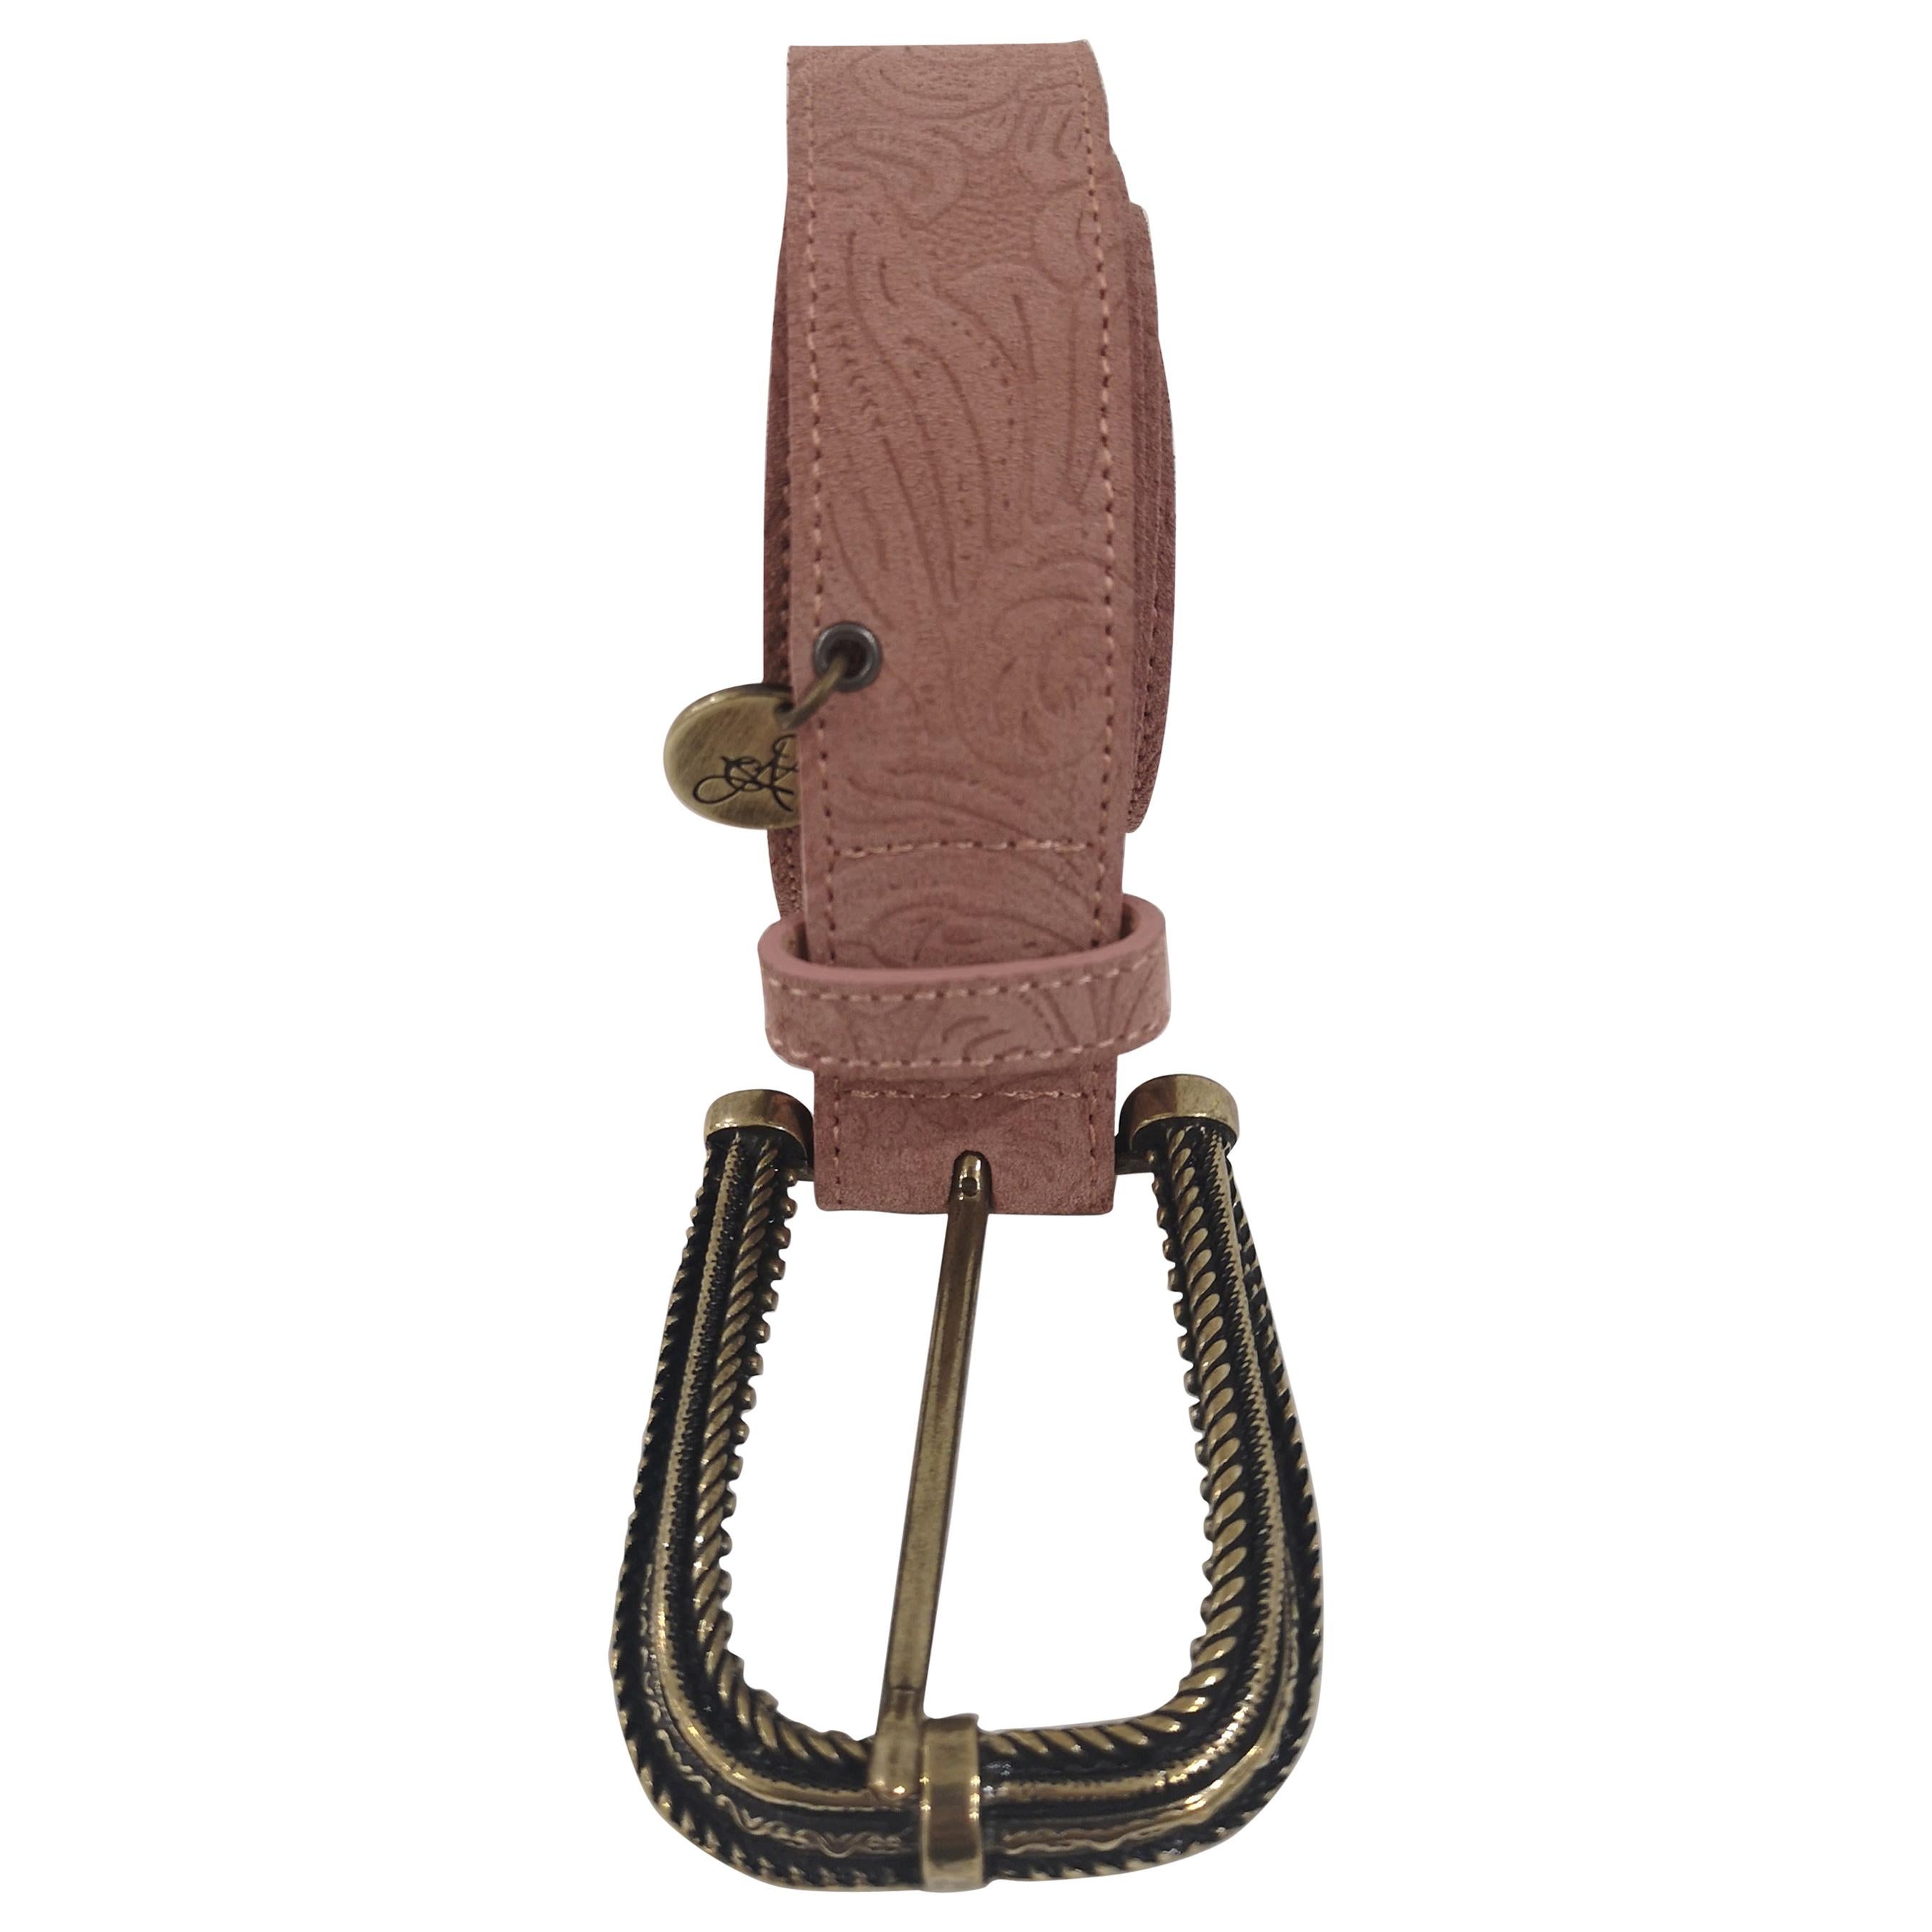 Pink leather suede belt NWOT